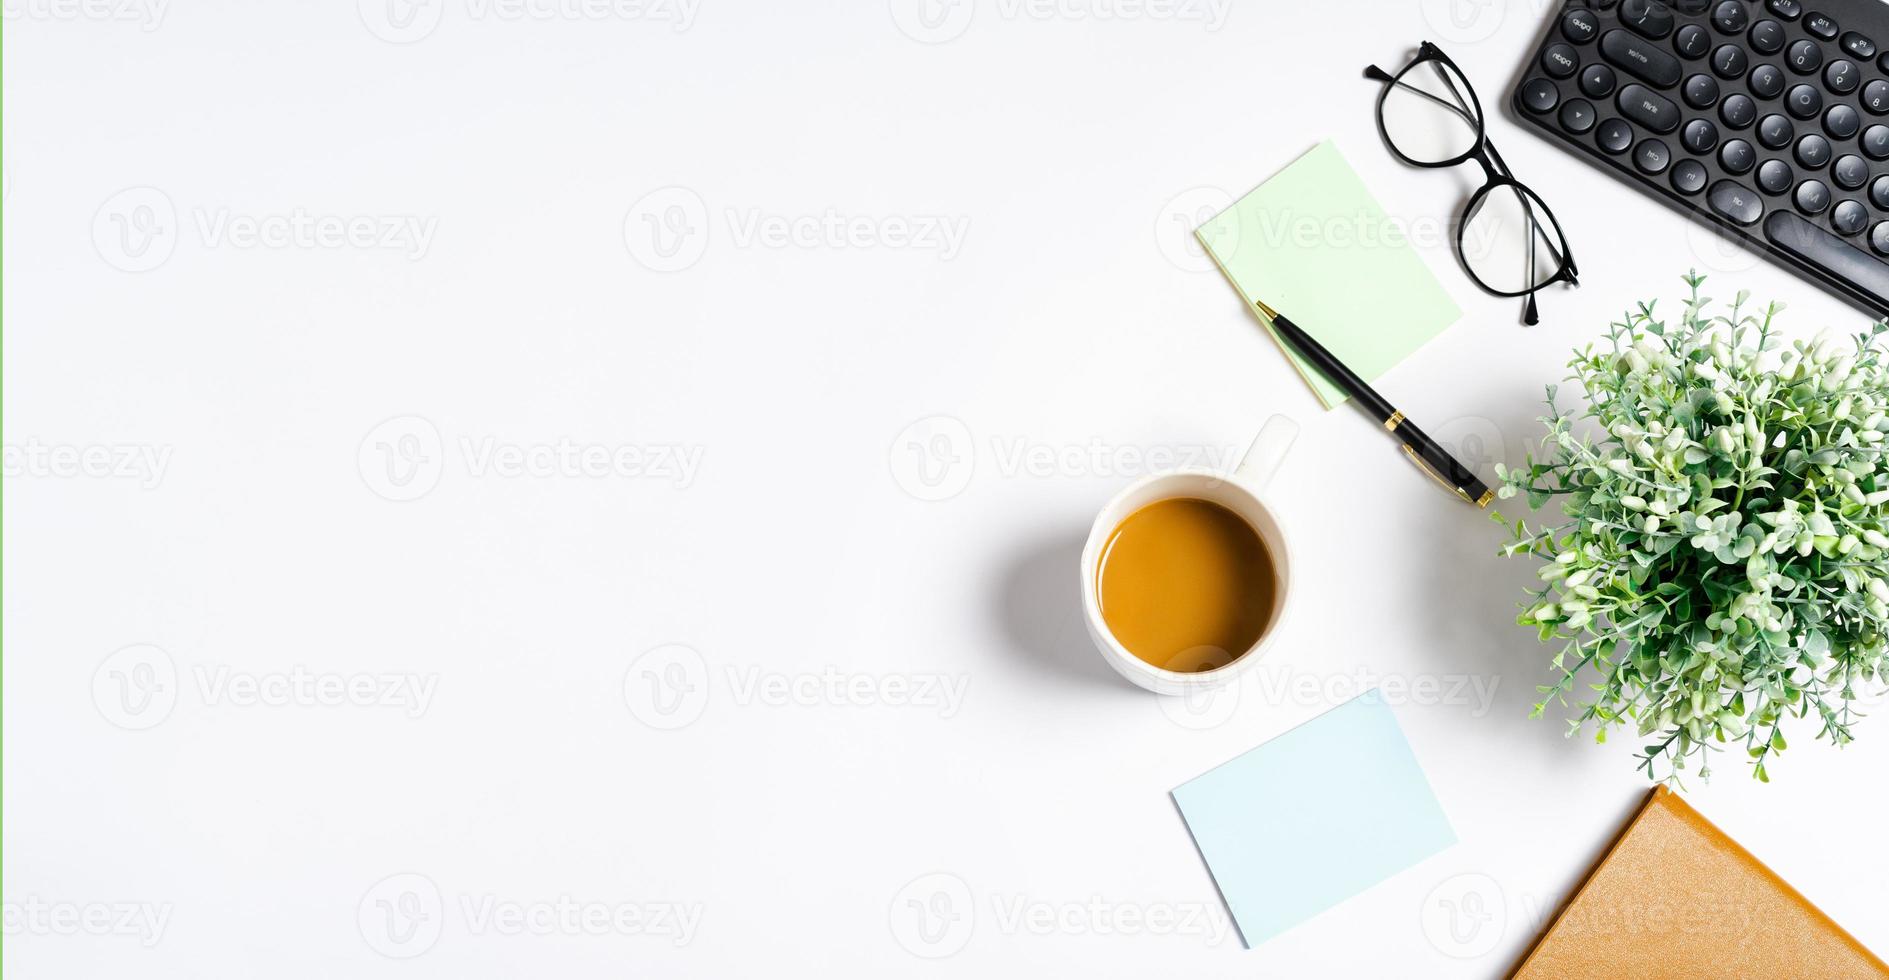 bovenaanzicht van koffie, boek, notitieboekje, pen, toetsenbord, telefoon op witte achtergrond foto